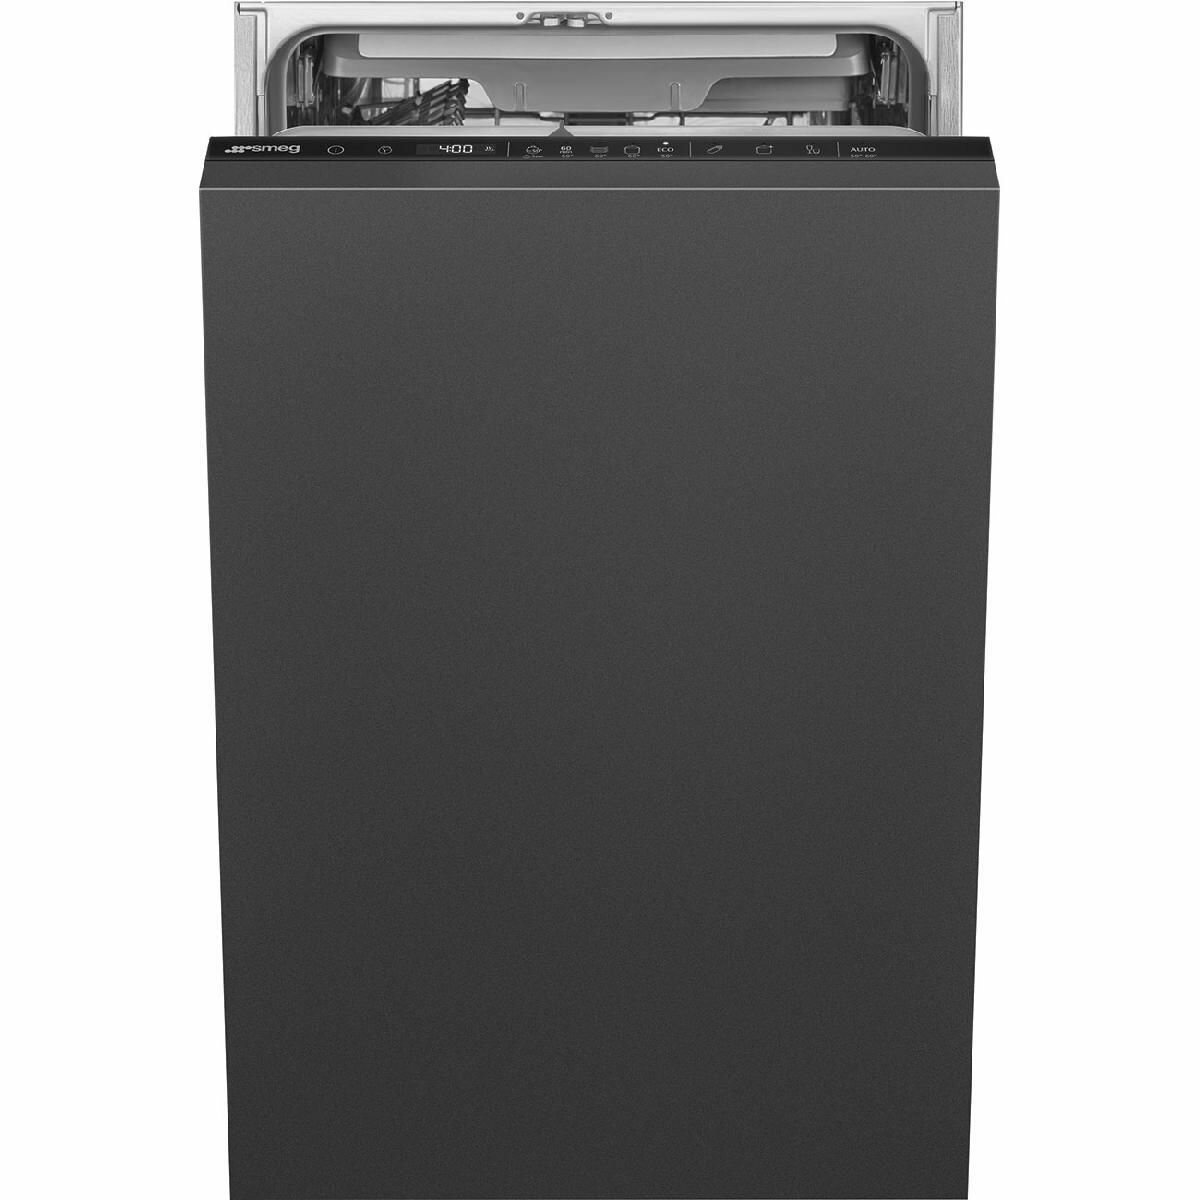 Встраиваемая посудомоечная машина SMEG ST4533IN, черный